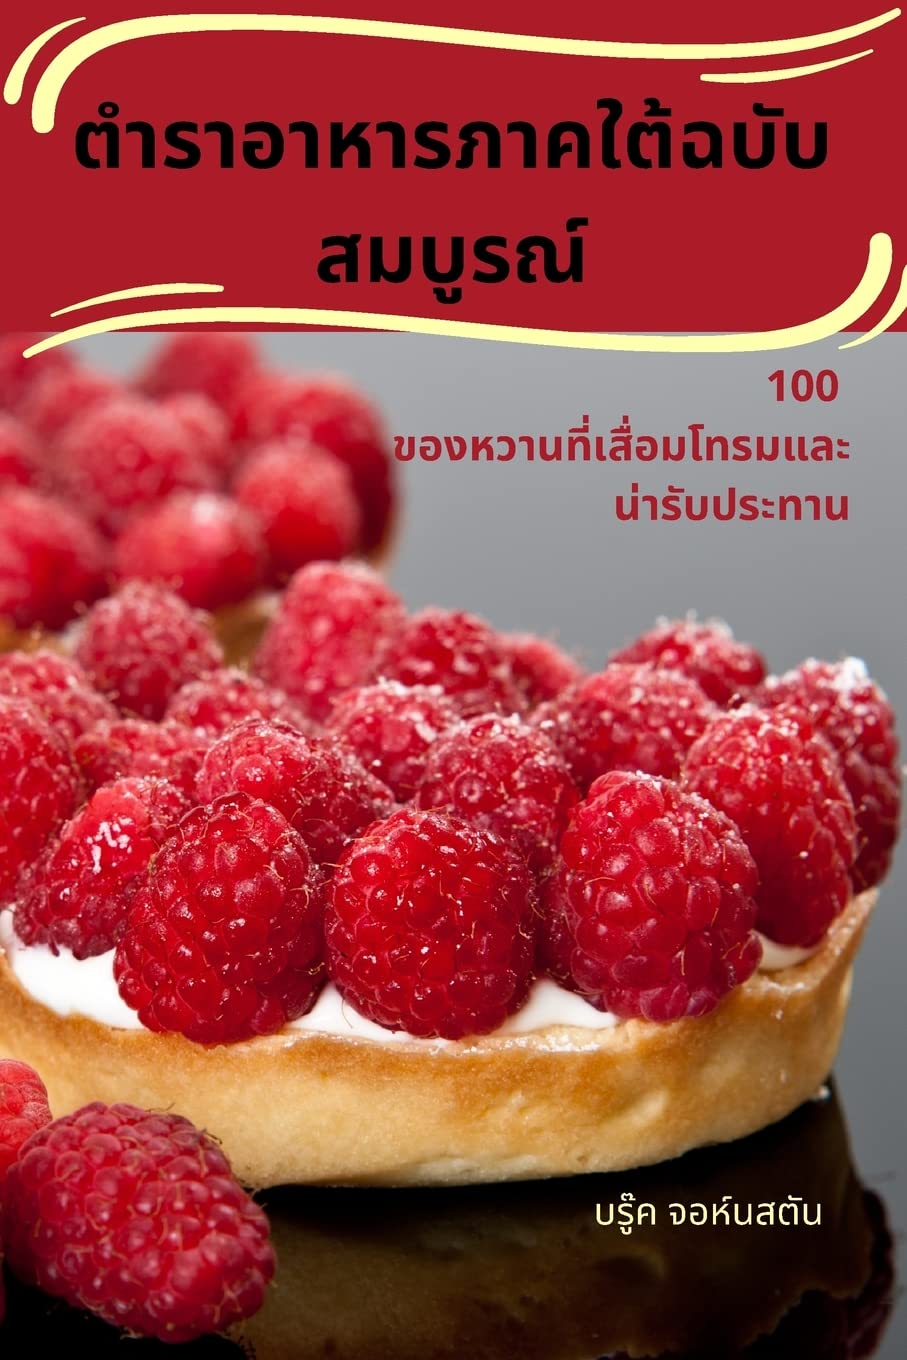 ตำราอาหารภาคใต้ฉบับสมบูรณ์ (Thai Edition)